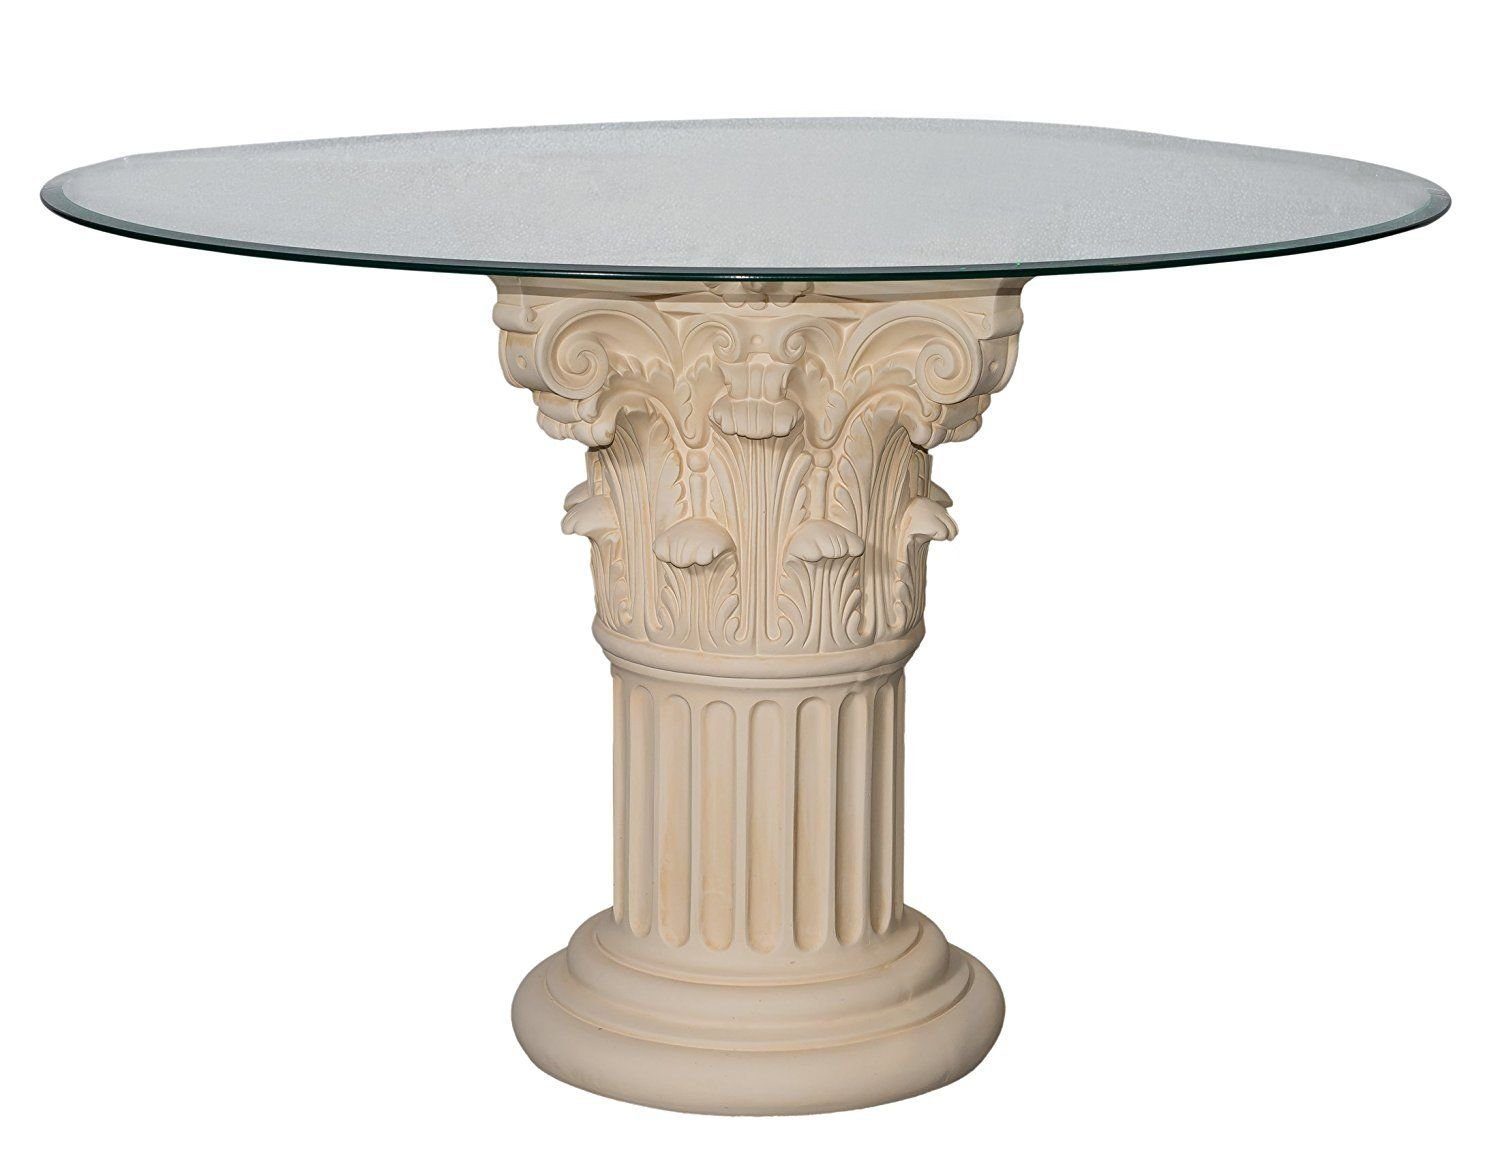 Antikes Wohndesign Säulen-Esstisch Runder Glas Esstisch Steinmöbel Tafeltisch Esszimmer Küchentisch Säule